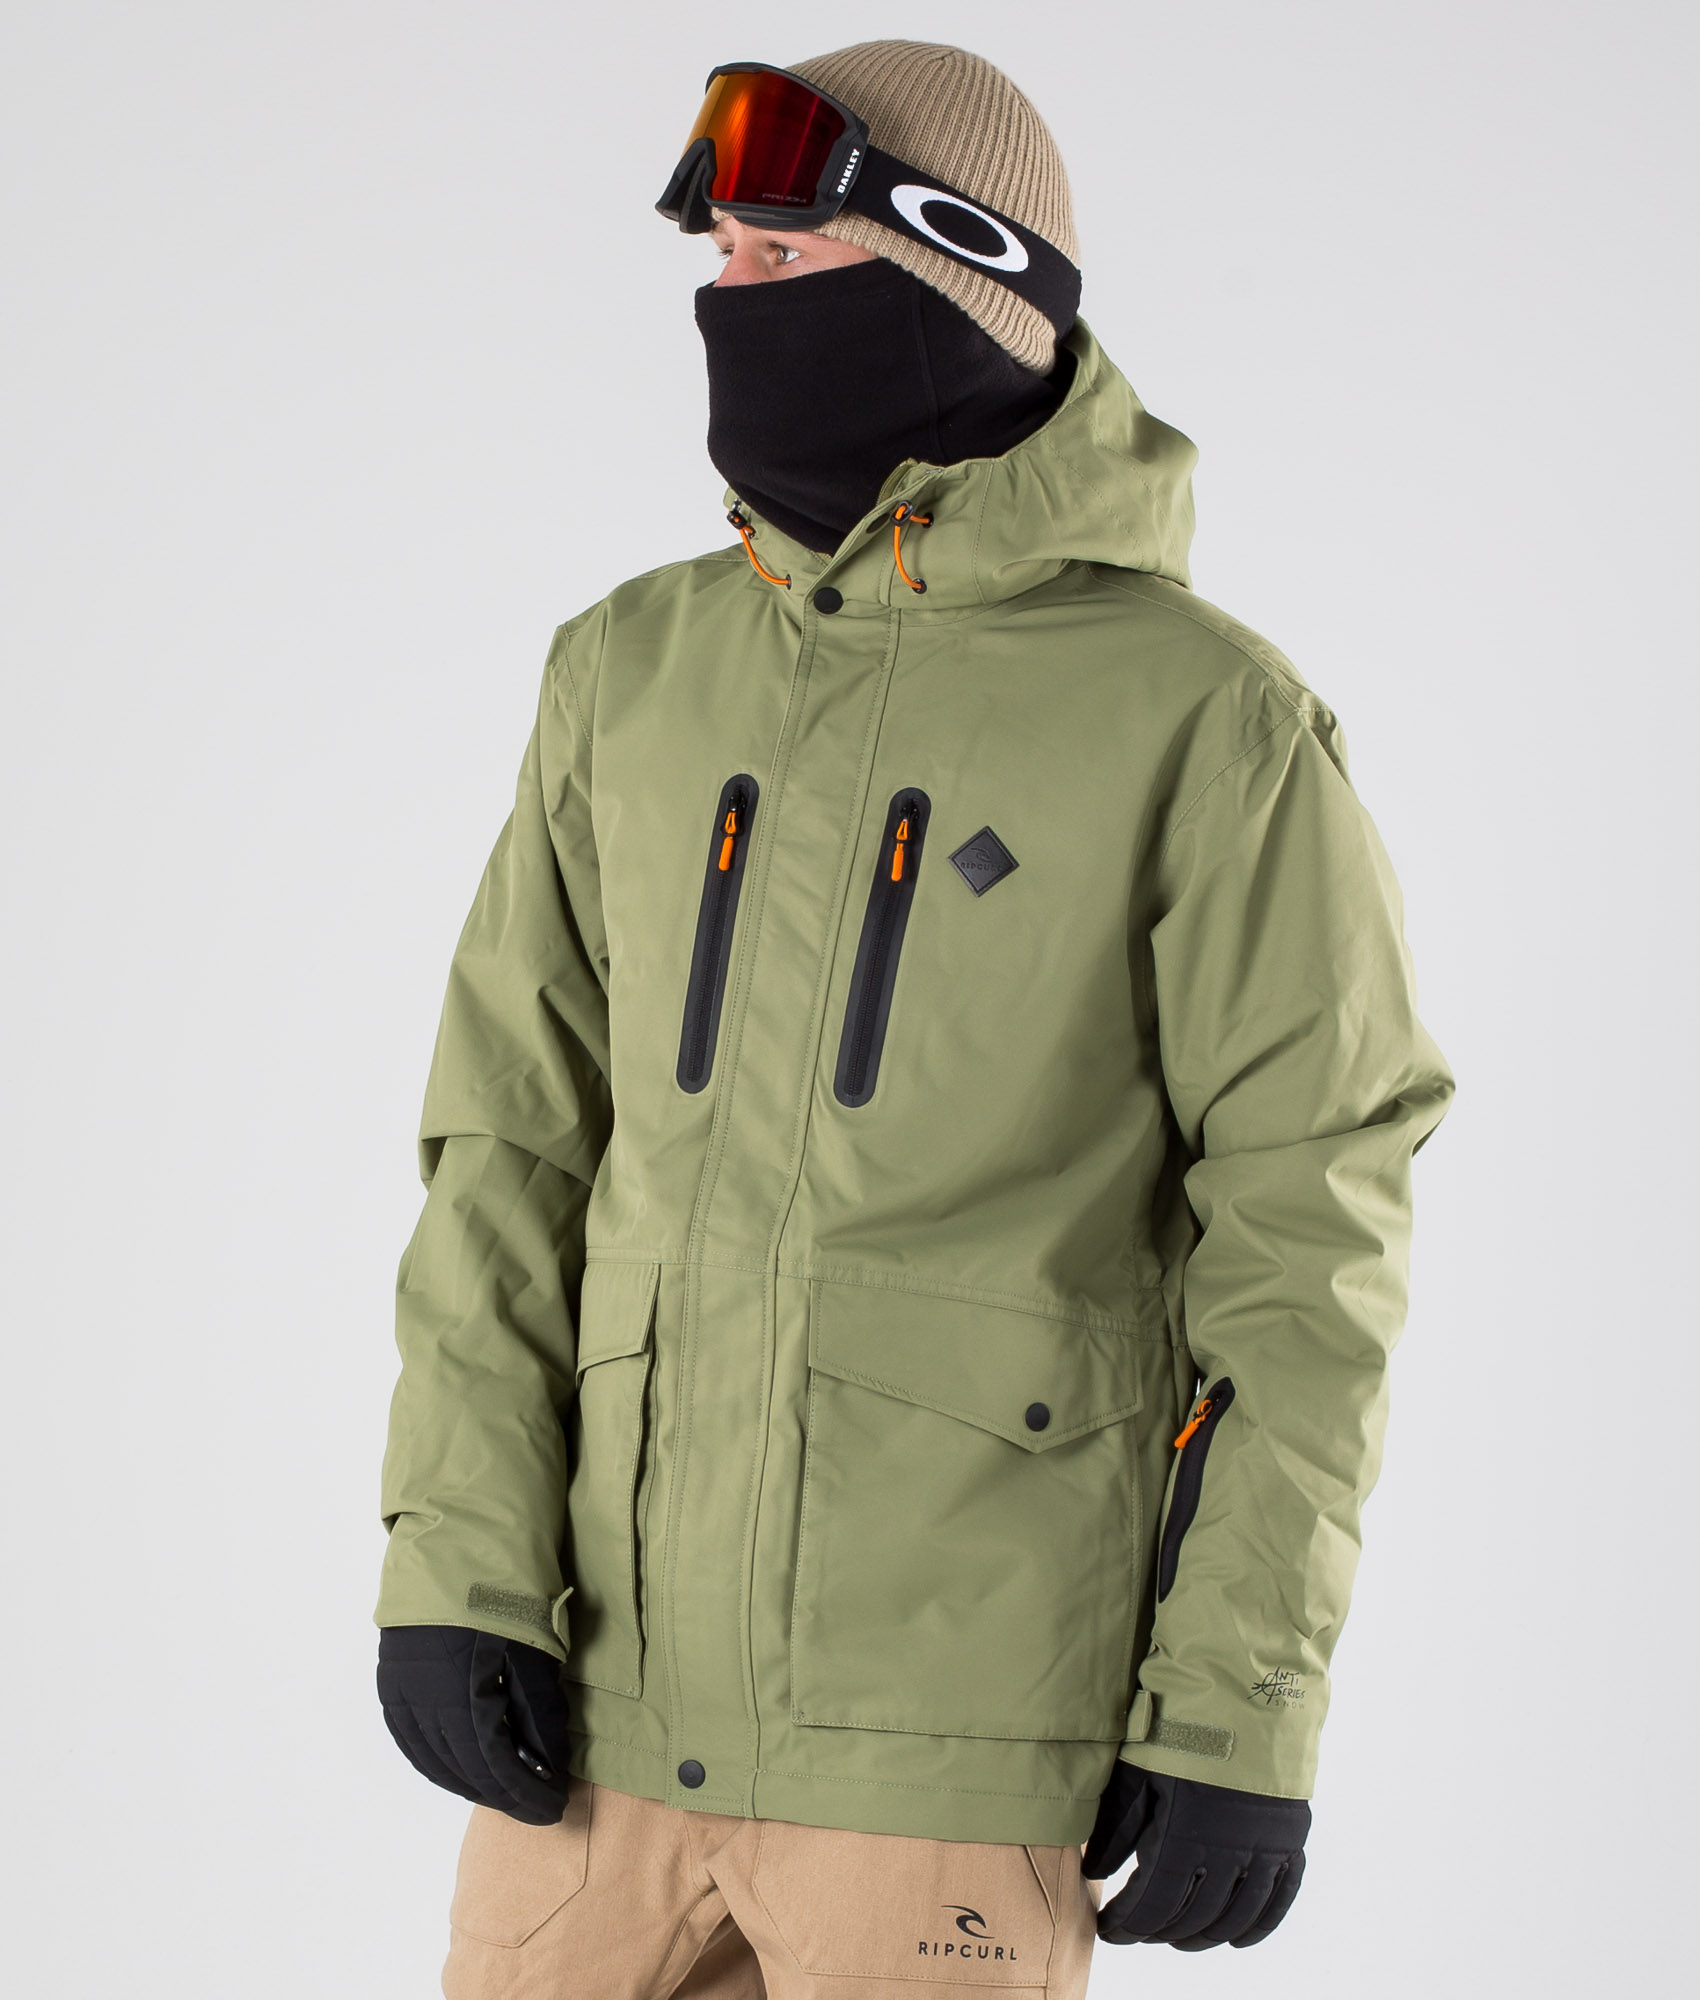 Kenmerkend Ronde Monetair Rip Curl Palmer Snowboard Jacket Men Loden Green | Ridestore.com